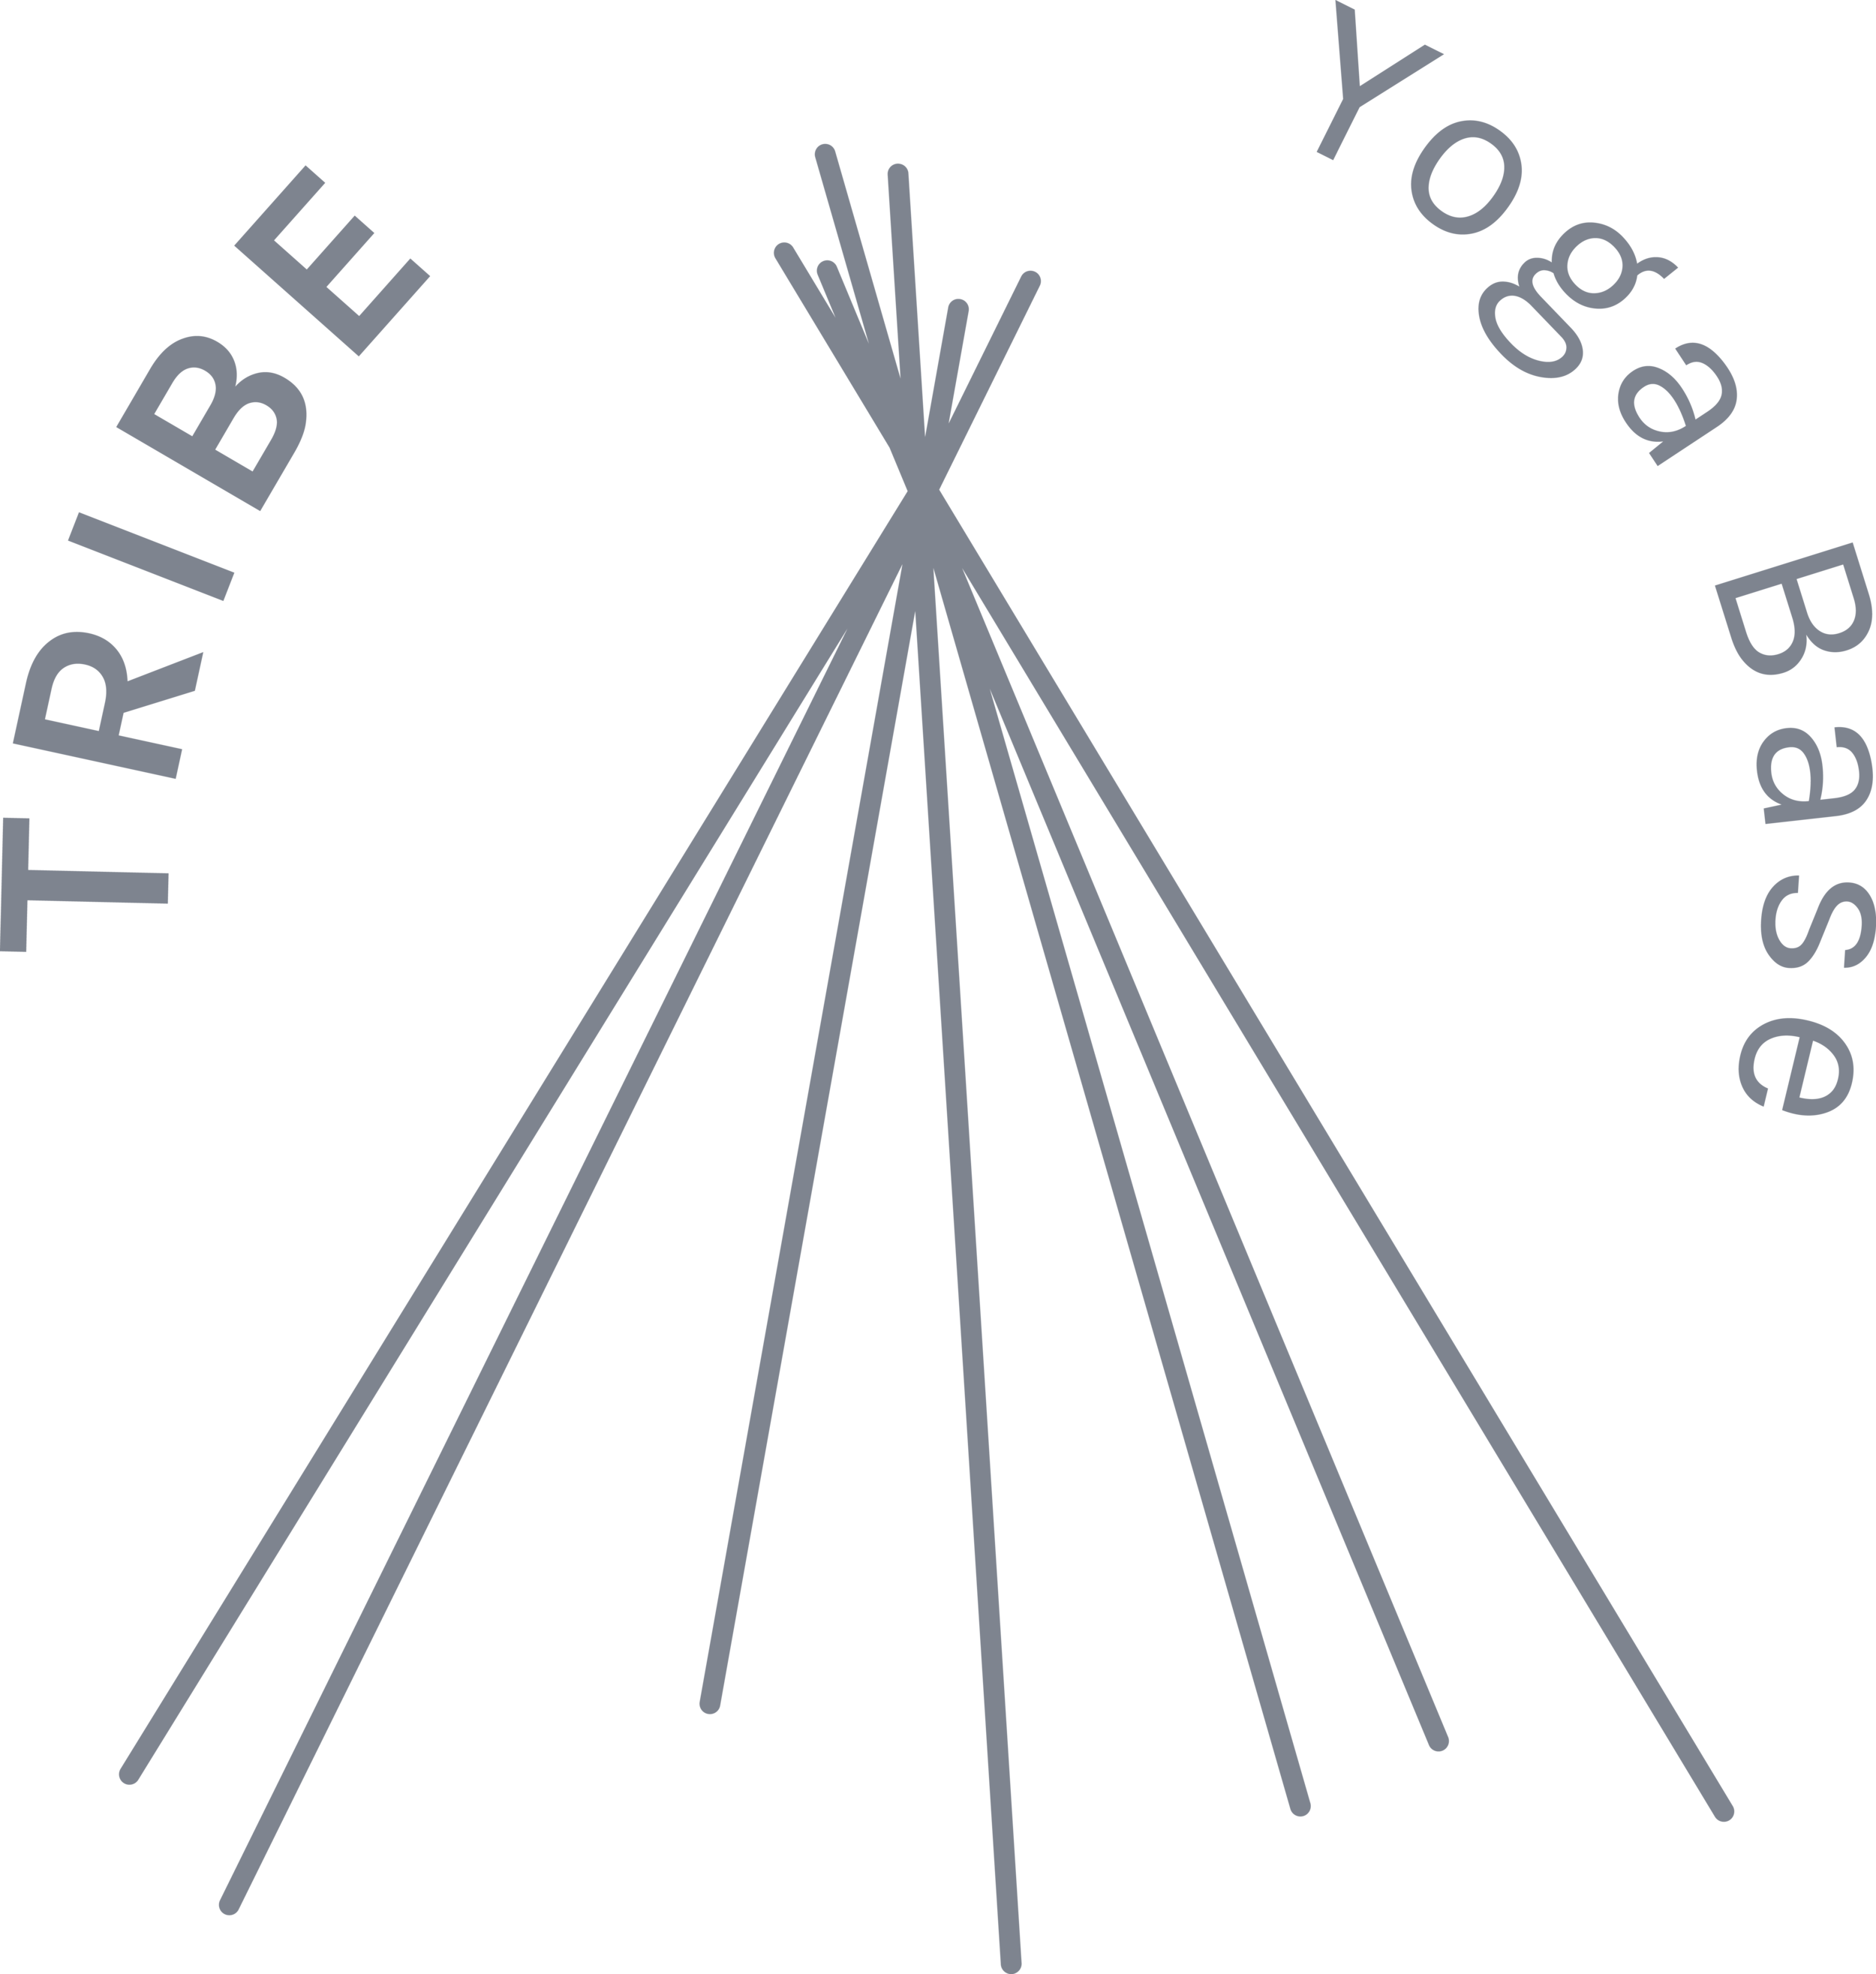 TRIBE Yoga Base